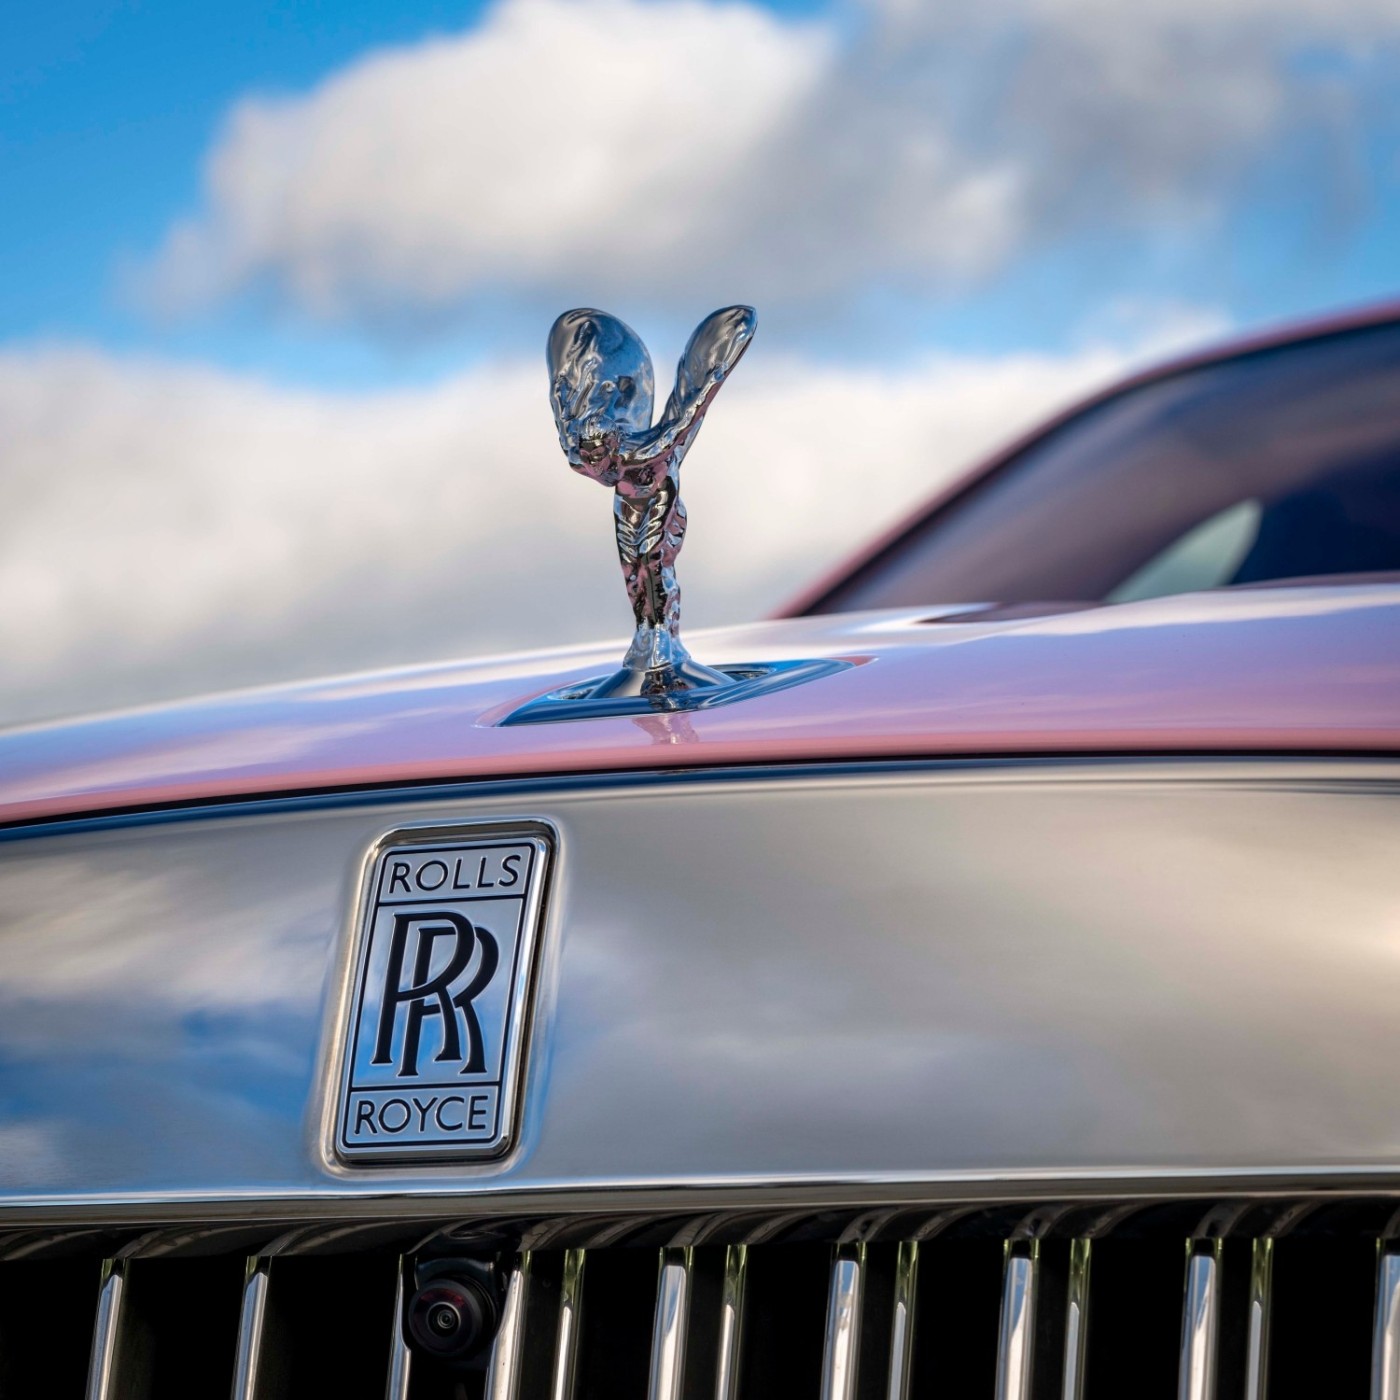 Xəyalları gerçəkləşdirmək: Rolls-Royce möhtəşəm BESPOKE sifarişlərinin bir ilini qeyd edir - FOTOLAR